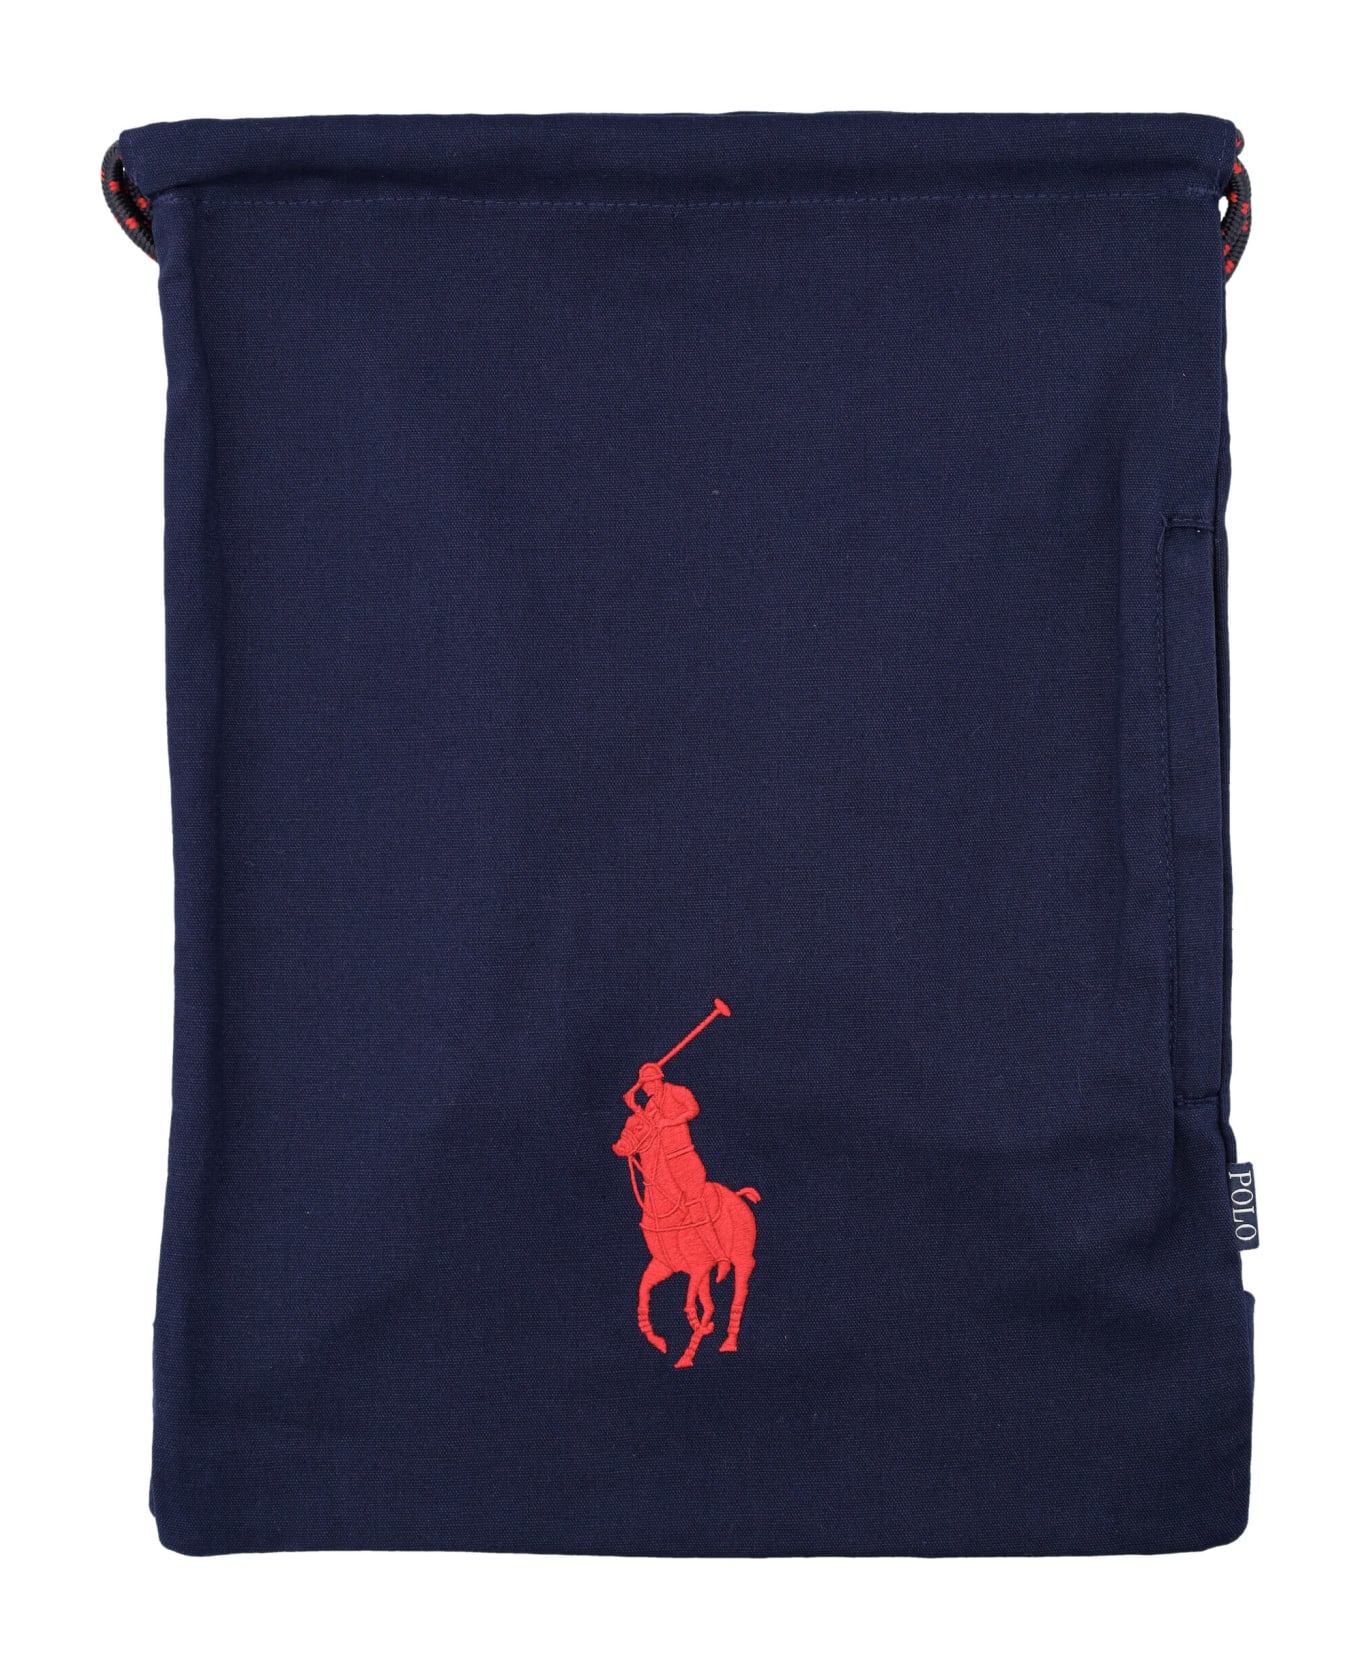 Polo Ralph Lauren Backpack - NAVY